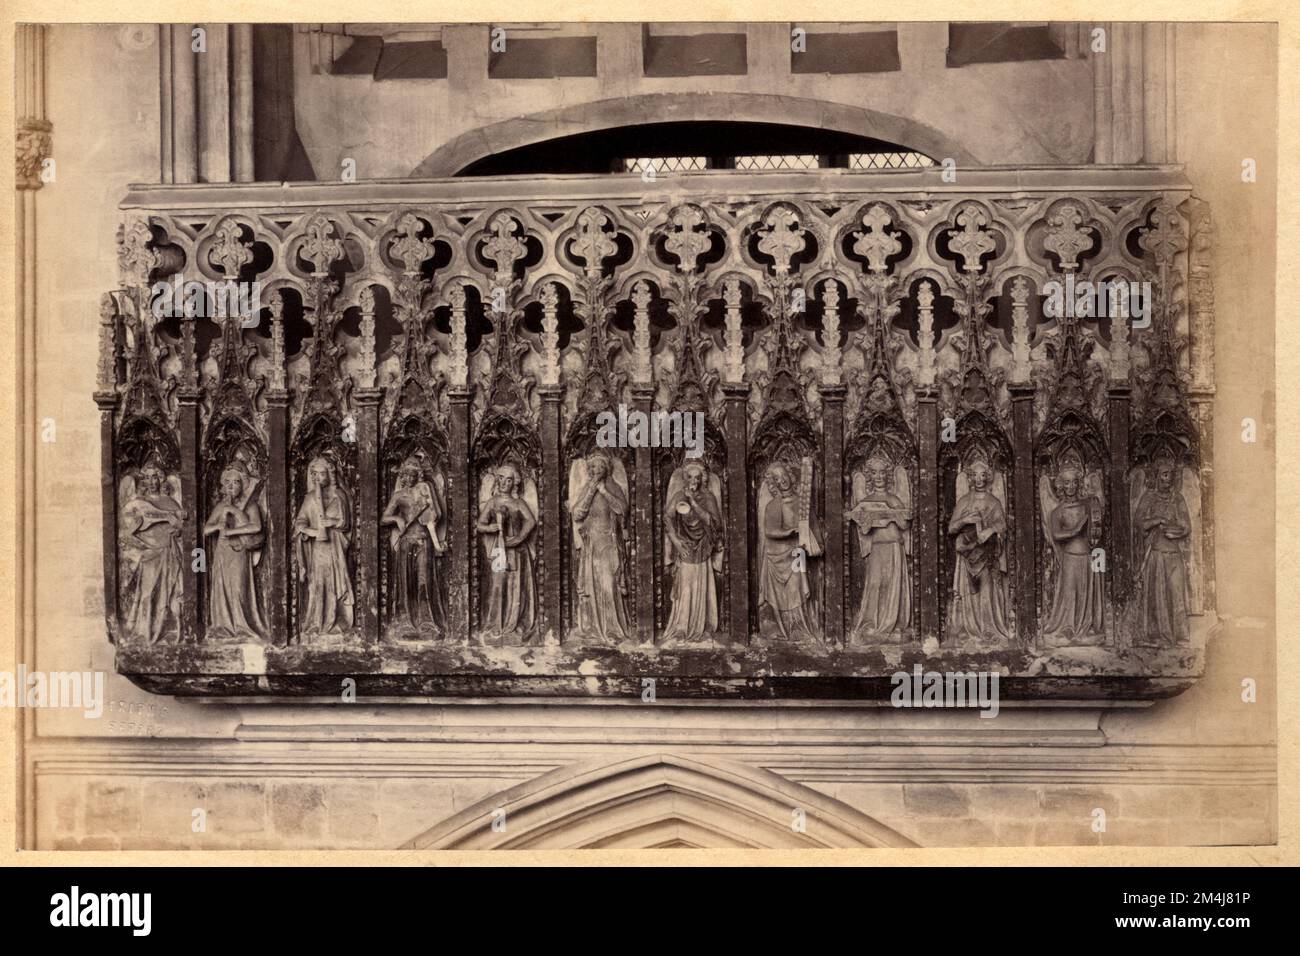 1860 CA , DEVON , INGHILTERRA , GRAN BRETAGNA : EXETER . La CATTEDRALE , fondata nel 1050 , la Galleria dei Minstrelli ( 1360 ), decorata con dodici angeli scolpiti, dodici dei quali suonano strumenti musicali medievali . Foto di Francesco Frati ( 1822 - 1898 ) . - GRAND BRETAGNA - VIEW - FOTO STORICHE - STORIA - GEOGRAFIA - GEOGRAFIA - ARCHITETTURA - ARCHITETTURA - STILE GOTICO - STILE GOTICO - CATTEDRALE - CHIESA - CHIESA - OTTOCENTO - 800'S - '800 - RELIGIOSITÀ - RELIGIONE - ARTE - ARTE - SCULTURA - SCULTURA - ANGELI Musica --- Archivio GBB Foto Stock